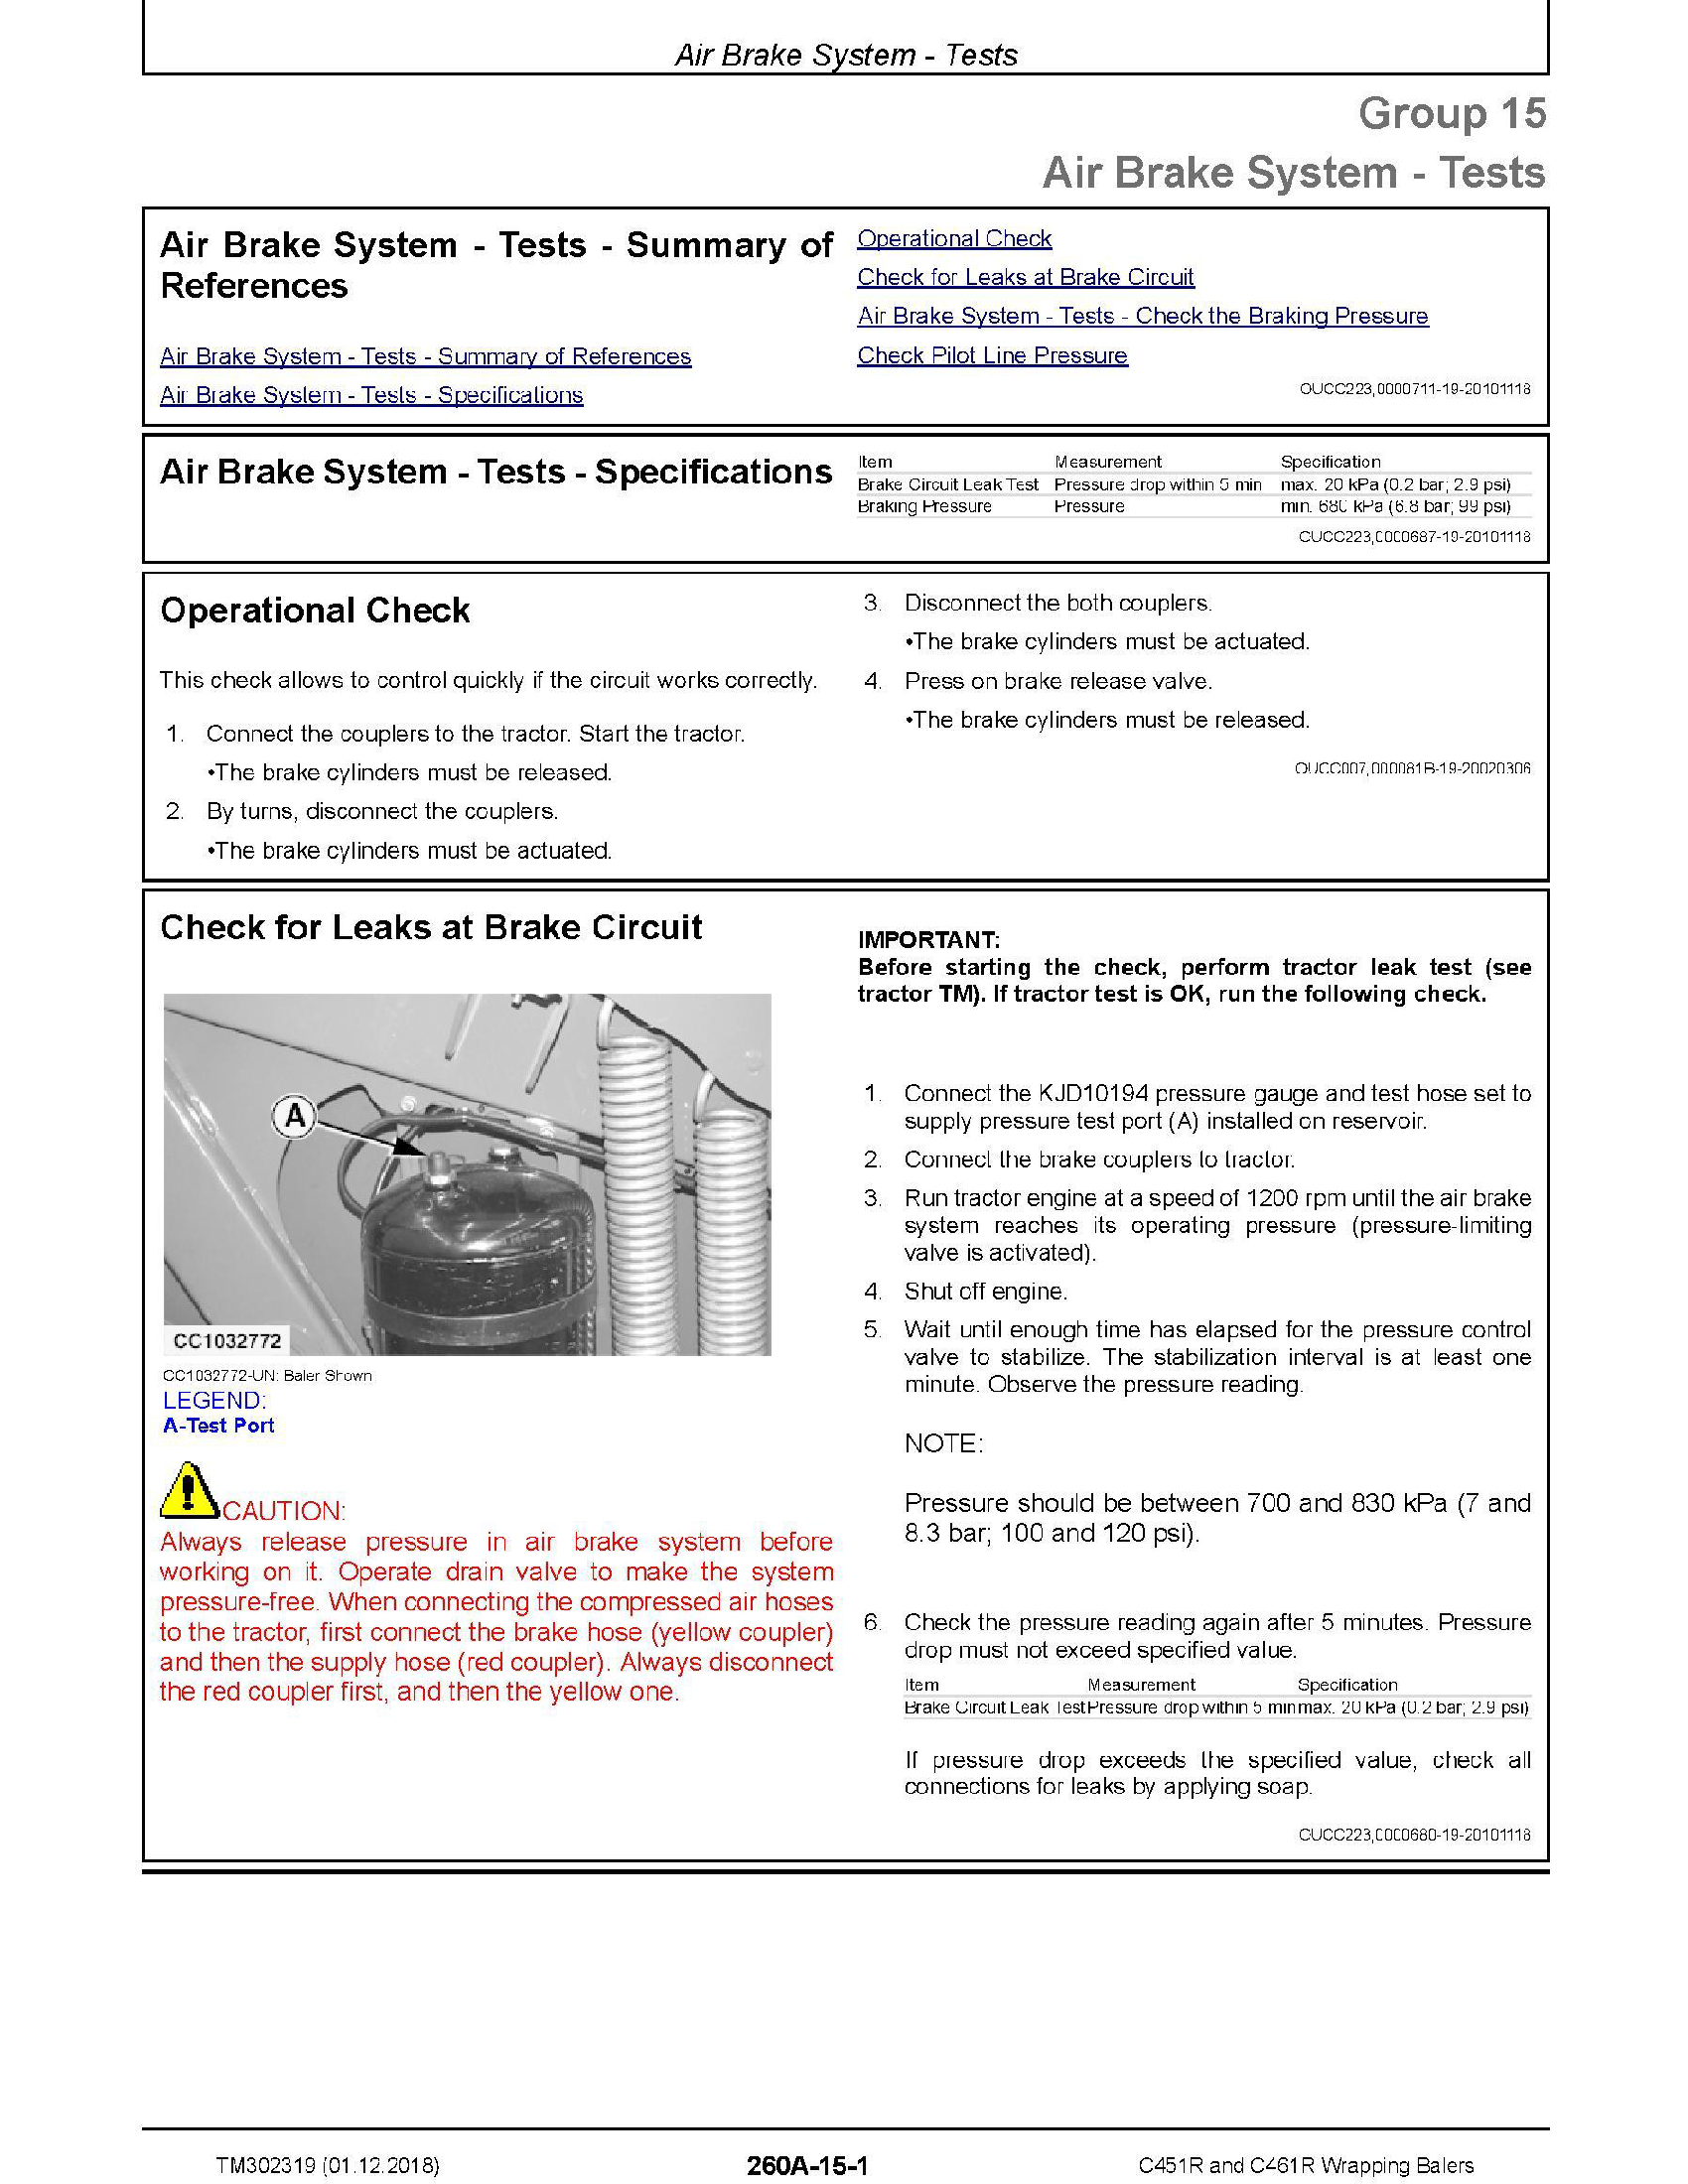 John Deere 35G manual pdf